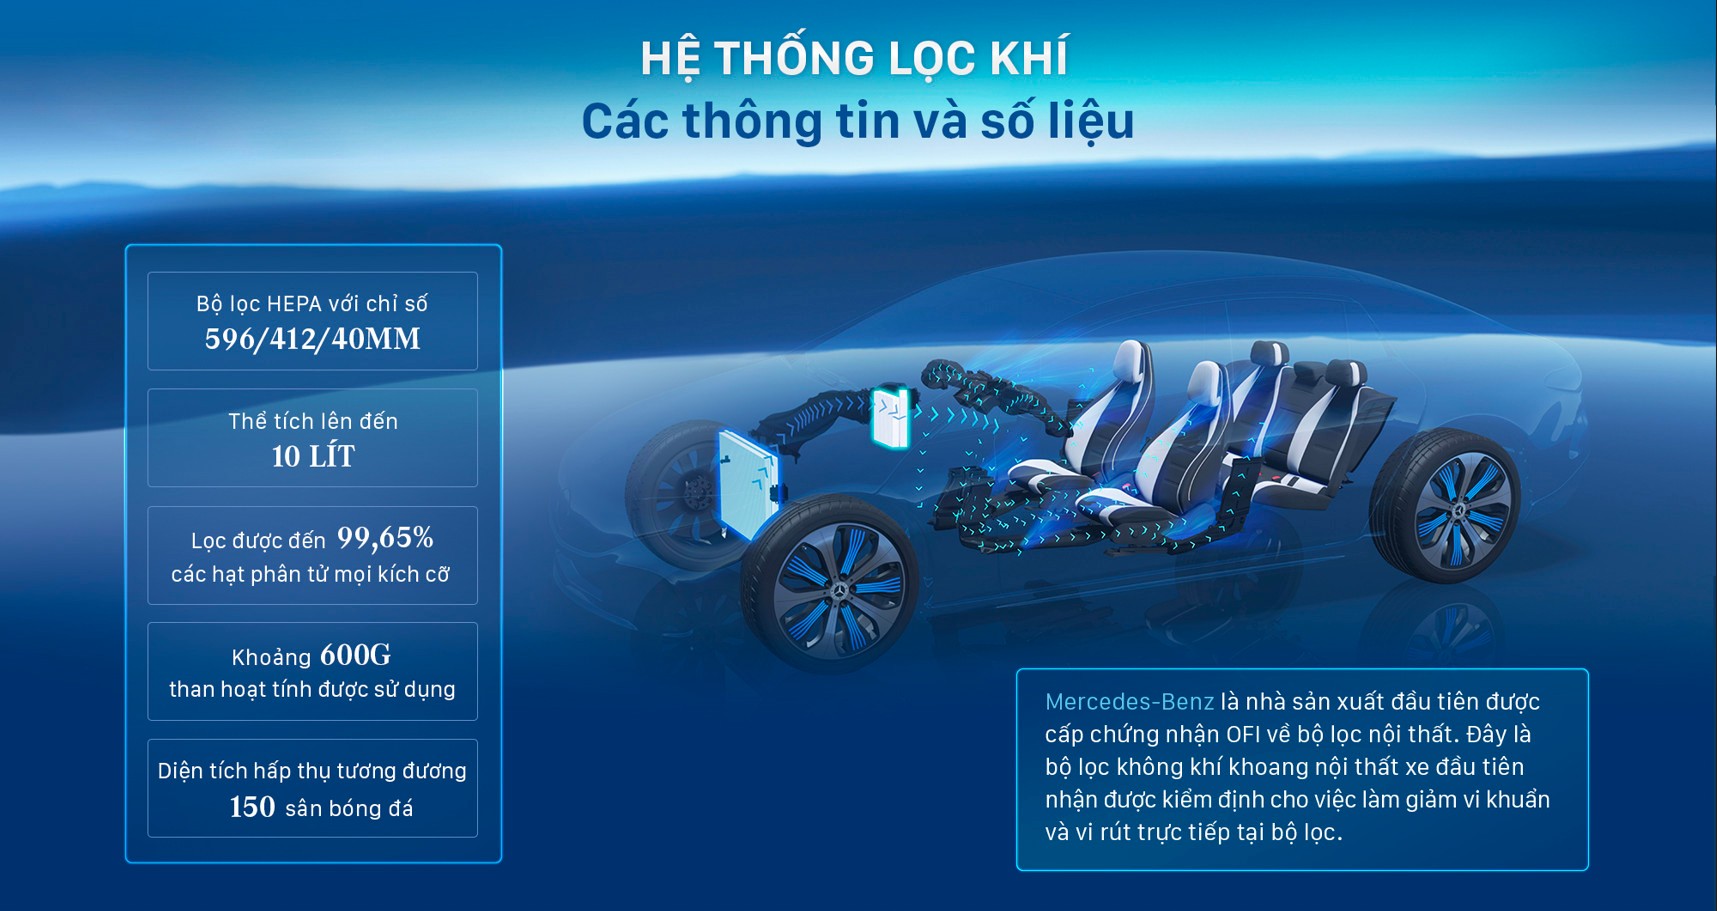 Điểm danh 5 công nghệ hiện đại nhất trên xe Mercedes-Benz tại Việt Nam - Ảnh 3.